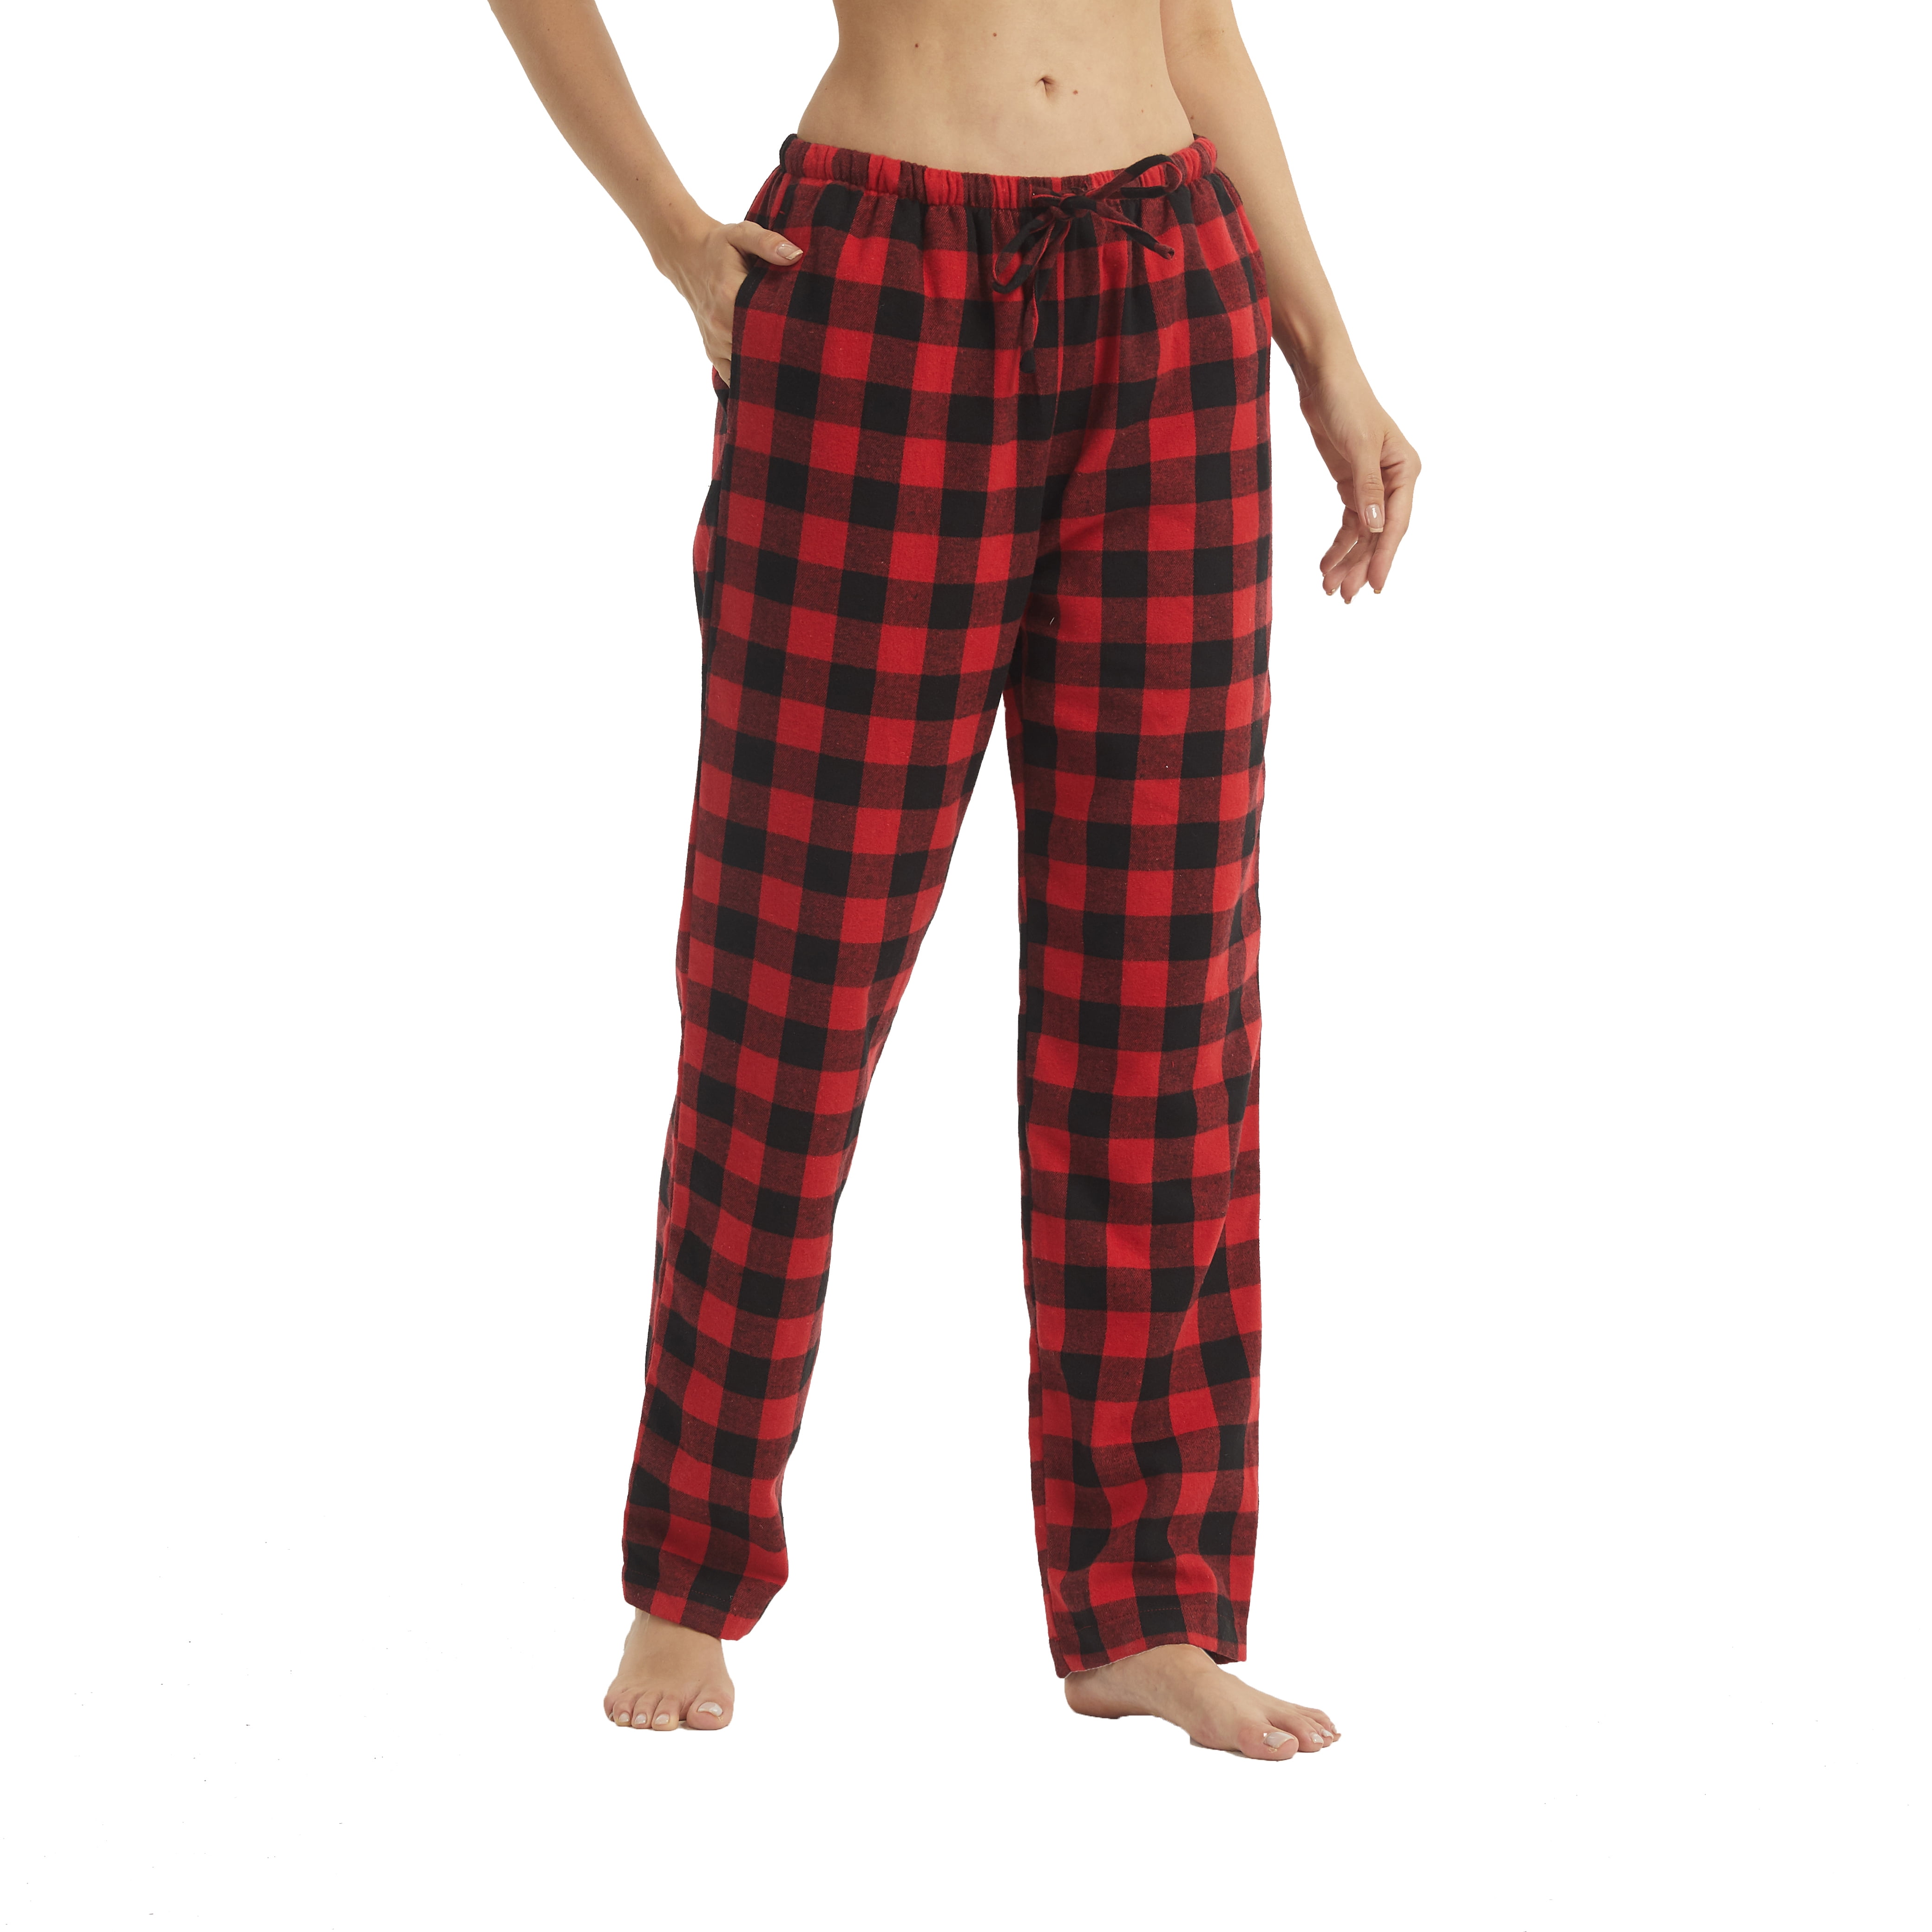 LANBAOSI Women Flannel Plaid Pajama Pants PJ Bottoms Size M - Walmart.com